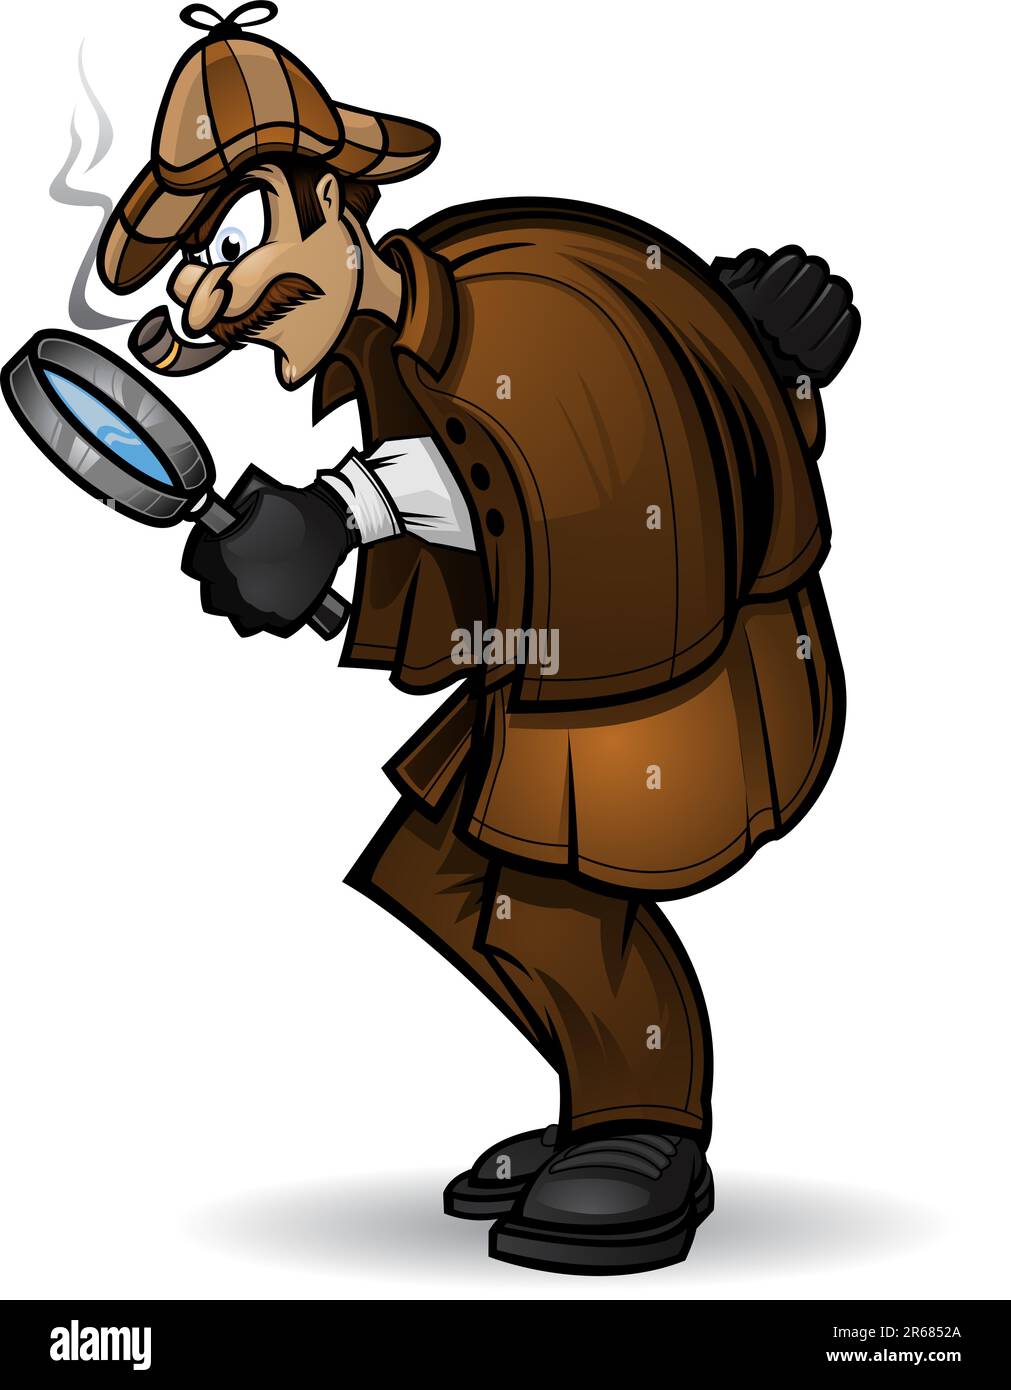 Illustration d'un détective regardant à travers sa loupe. Divisé en calques pour faciliter l'édition. Illustration de Vecteur